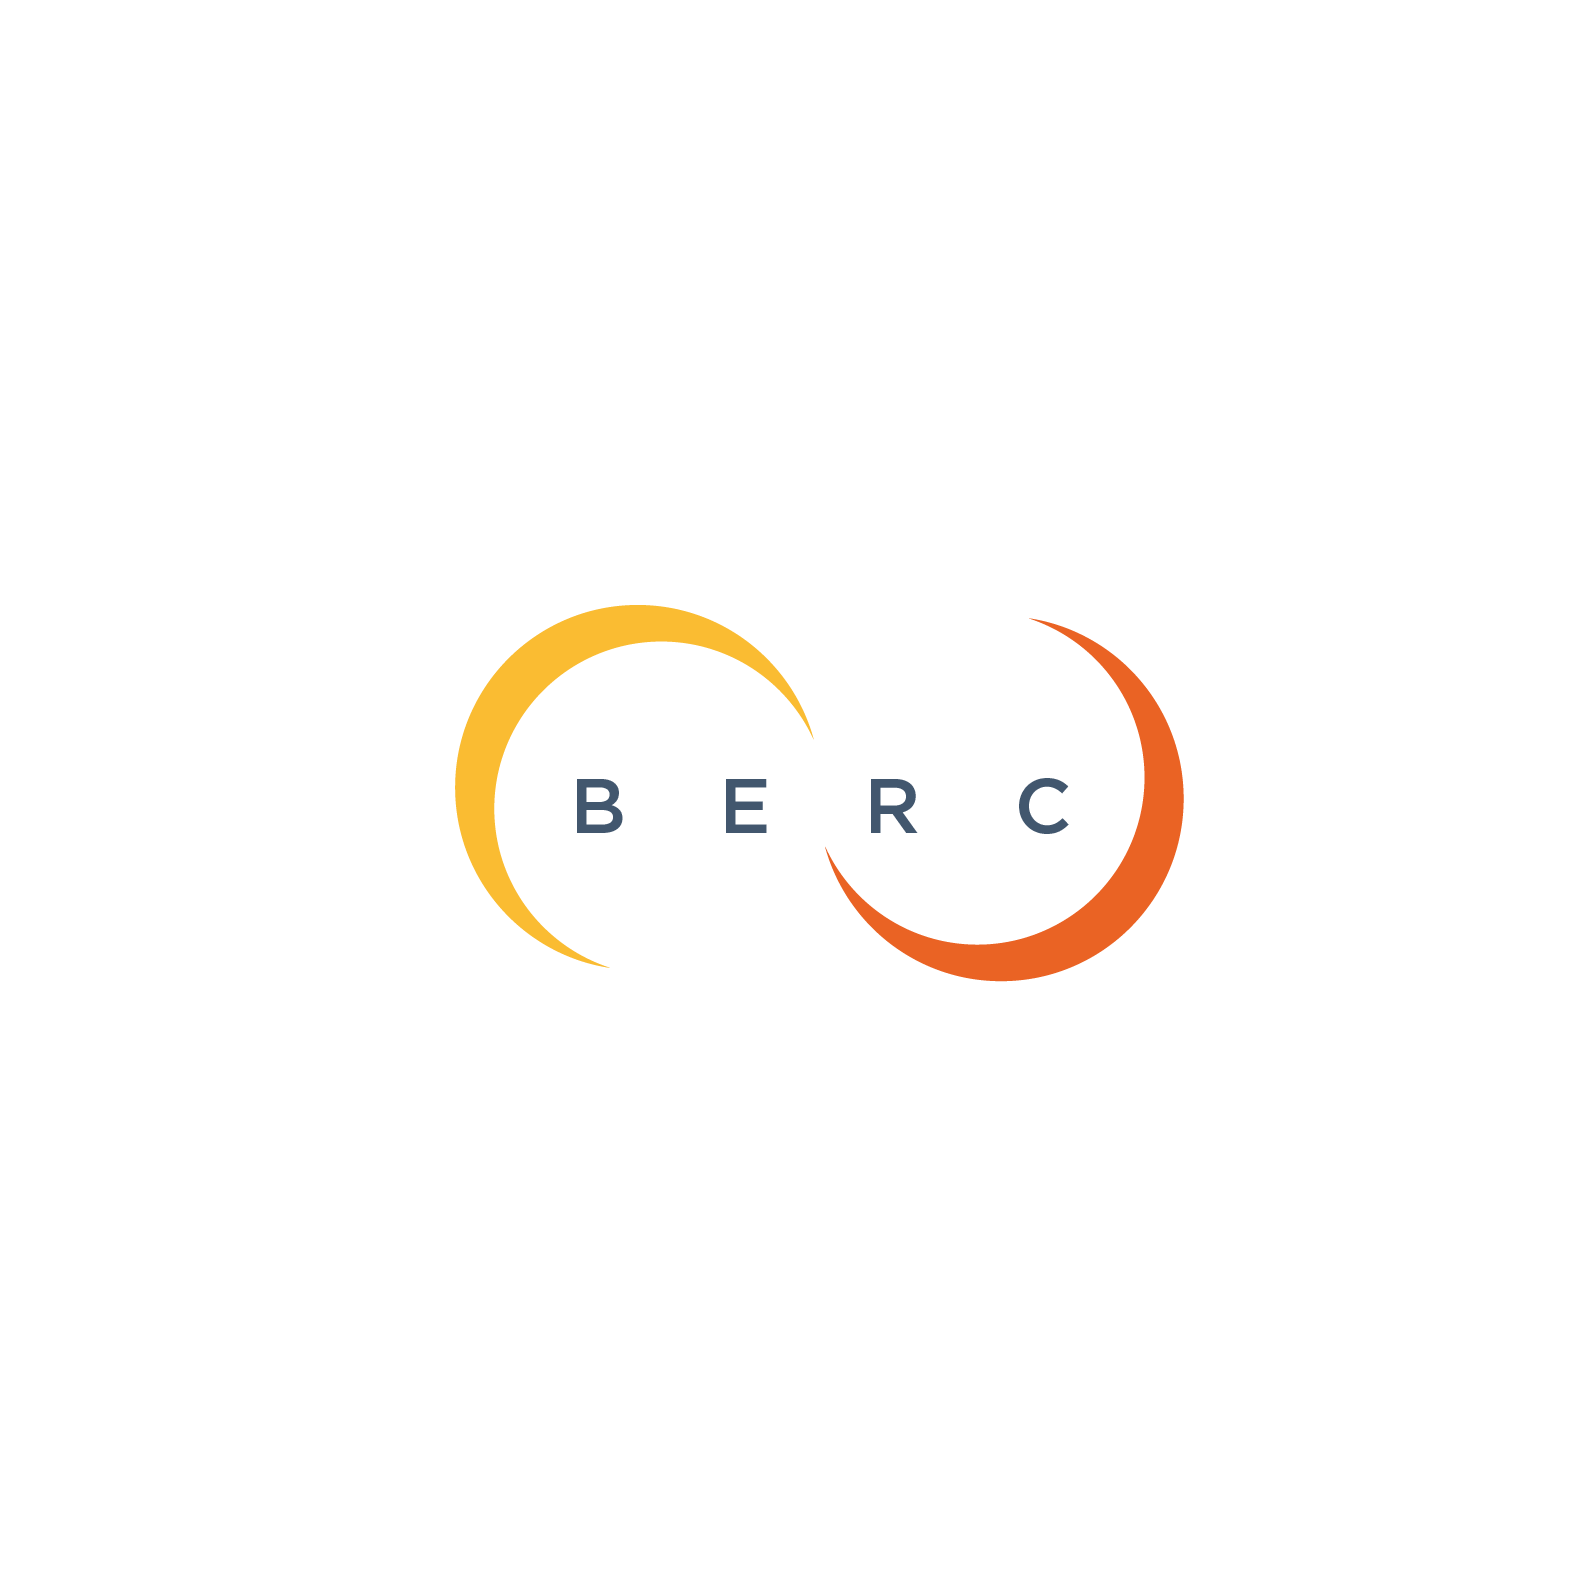 Jobs Openings in BERC